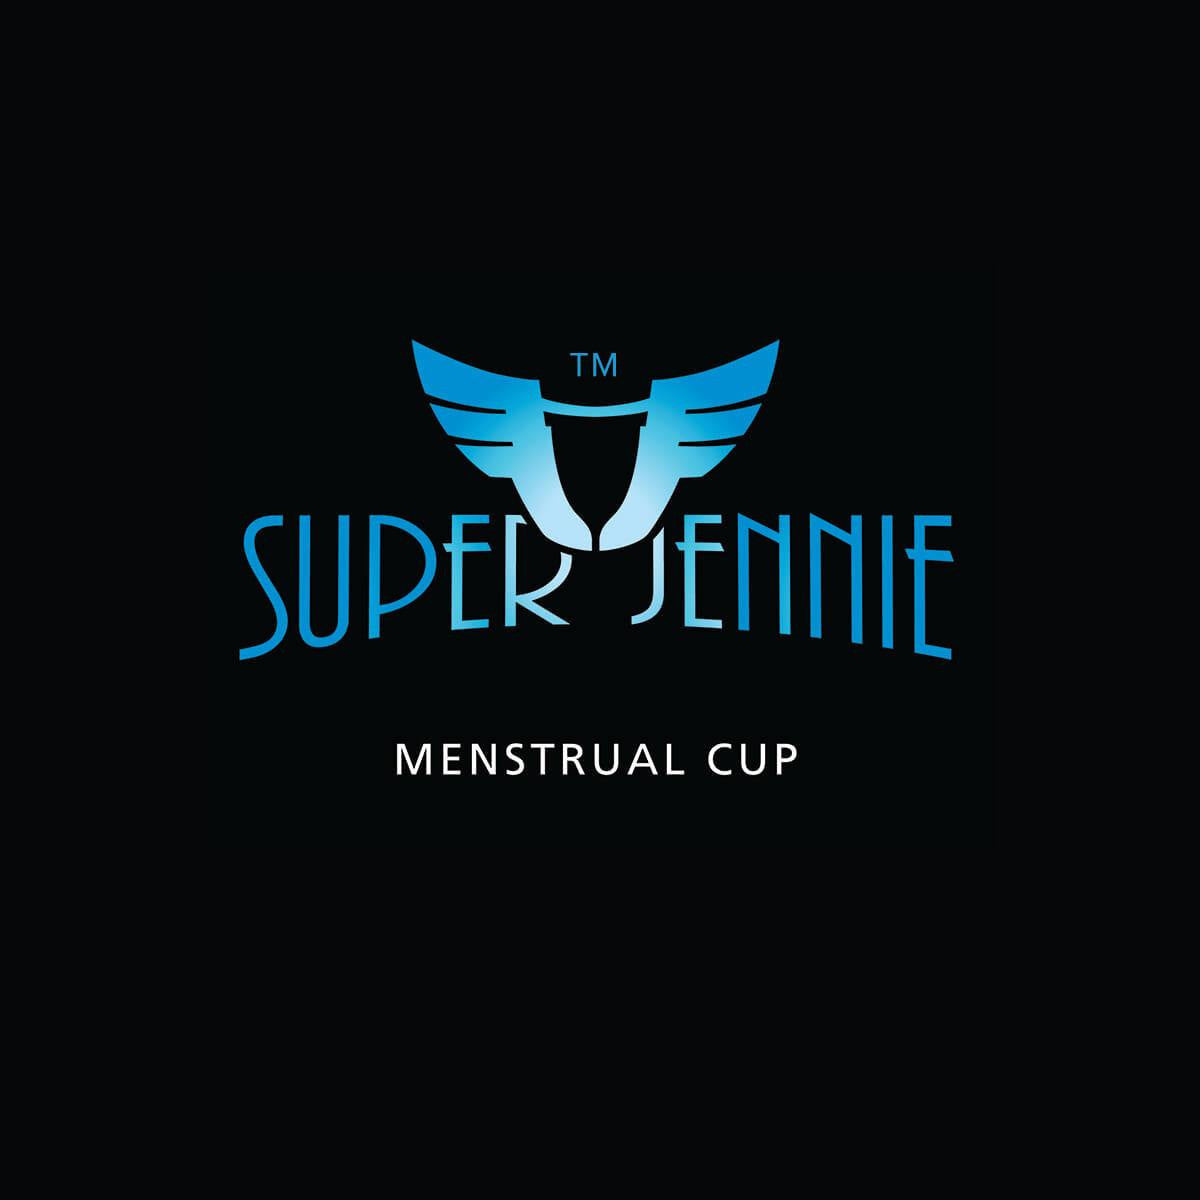 Super Jennie Cup Model 1 - Happeriod